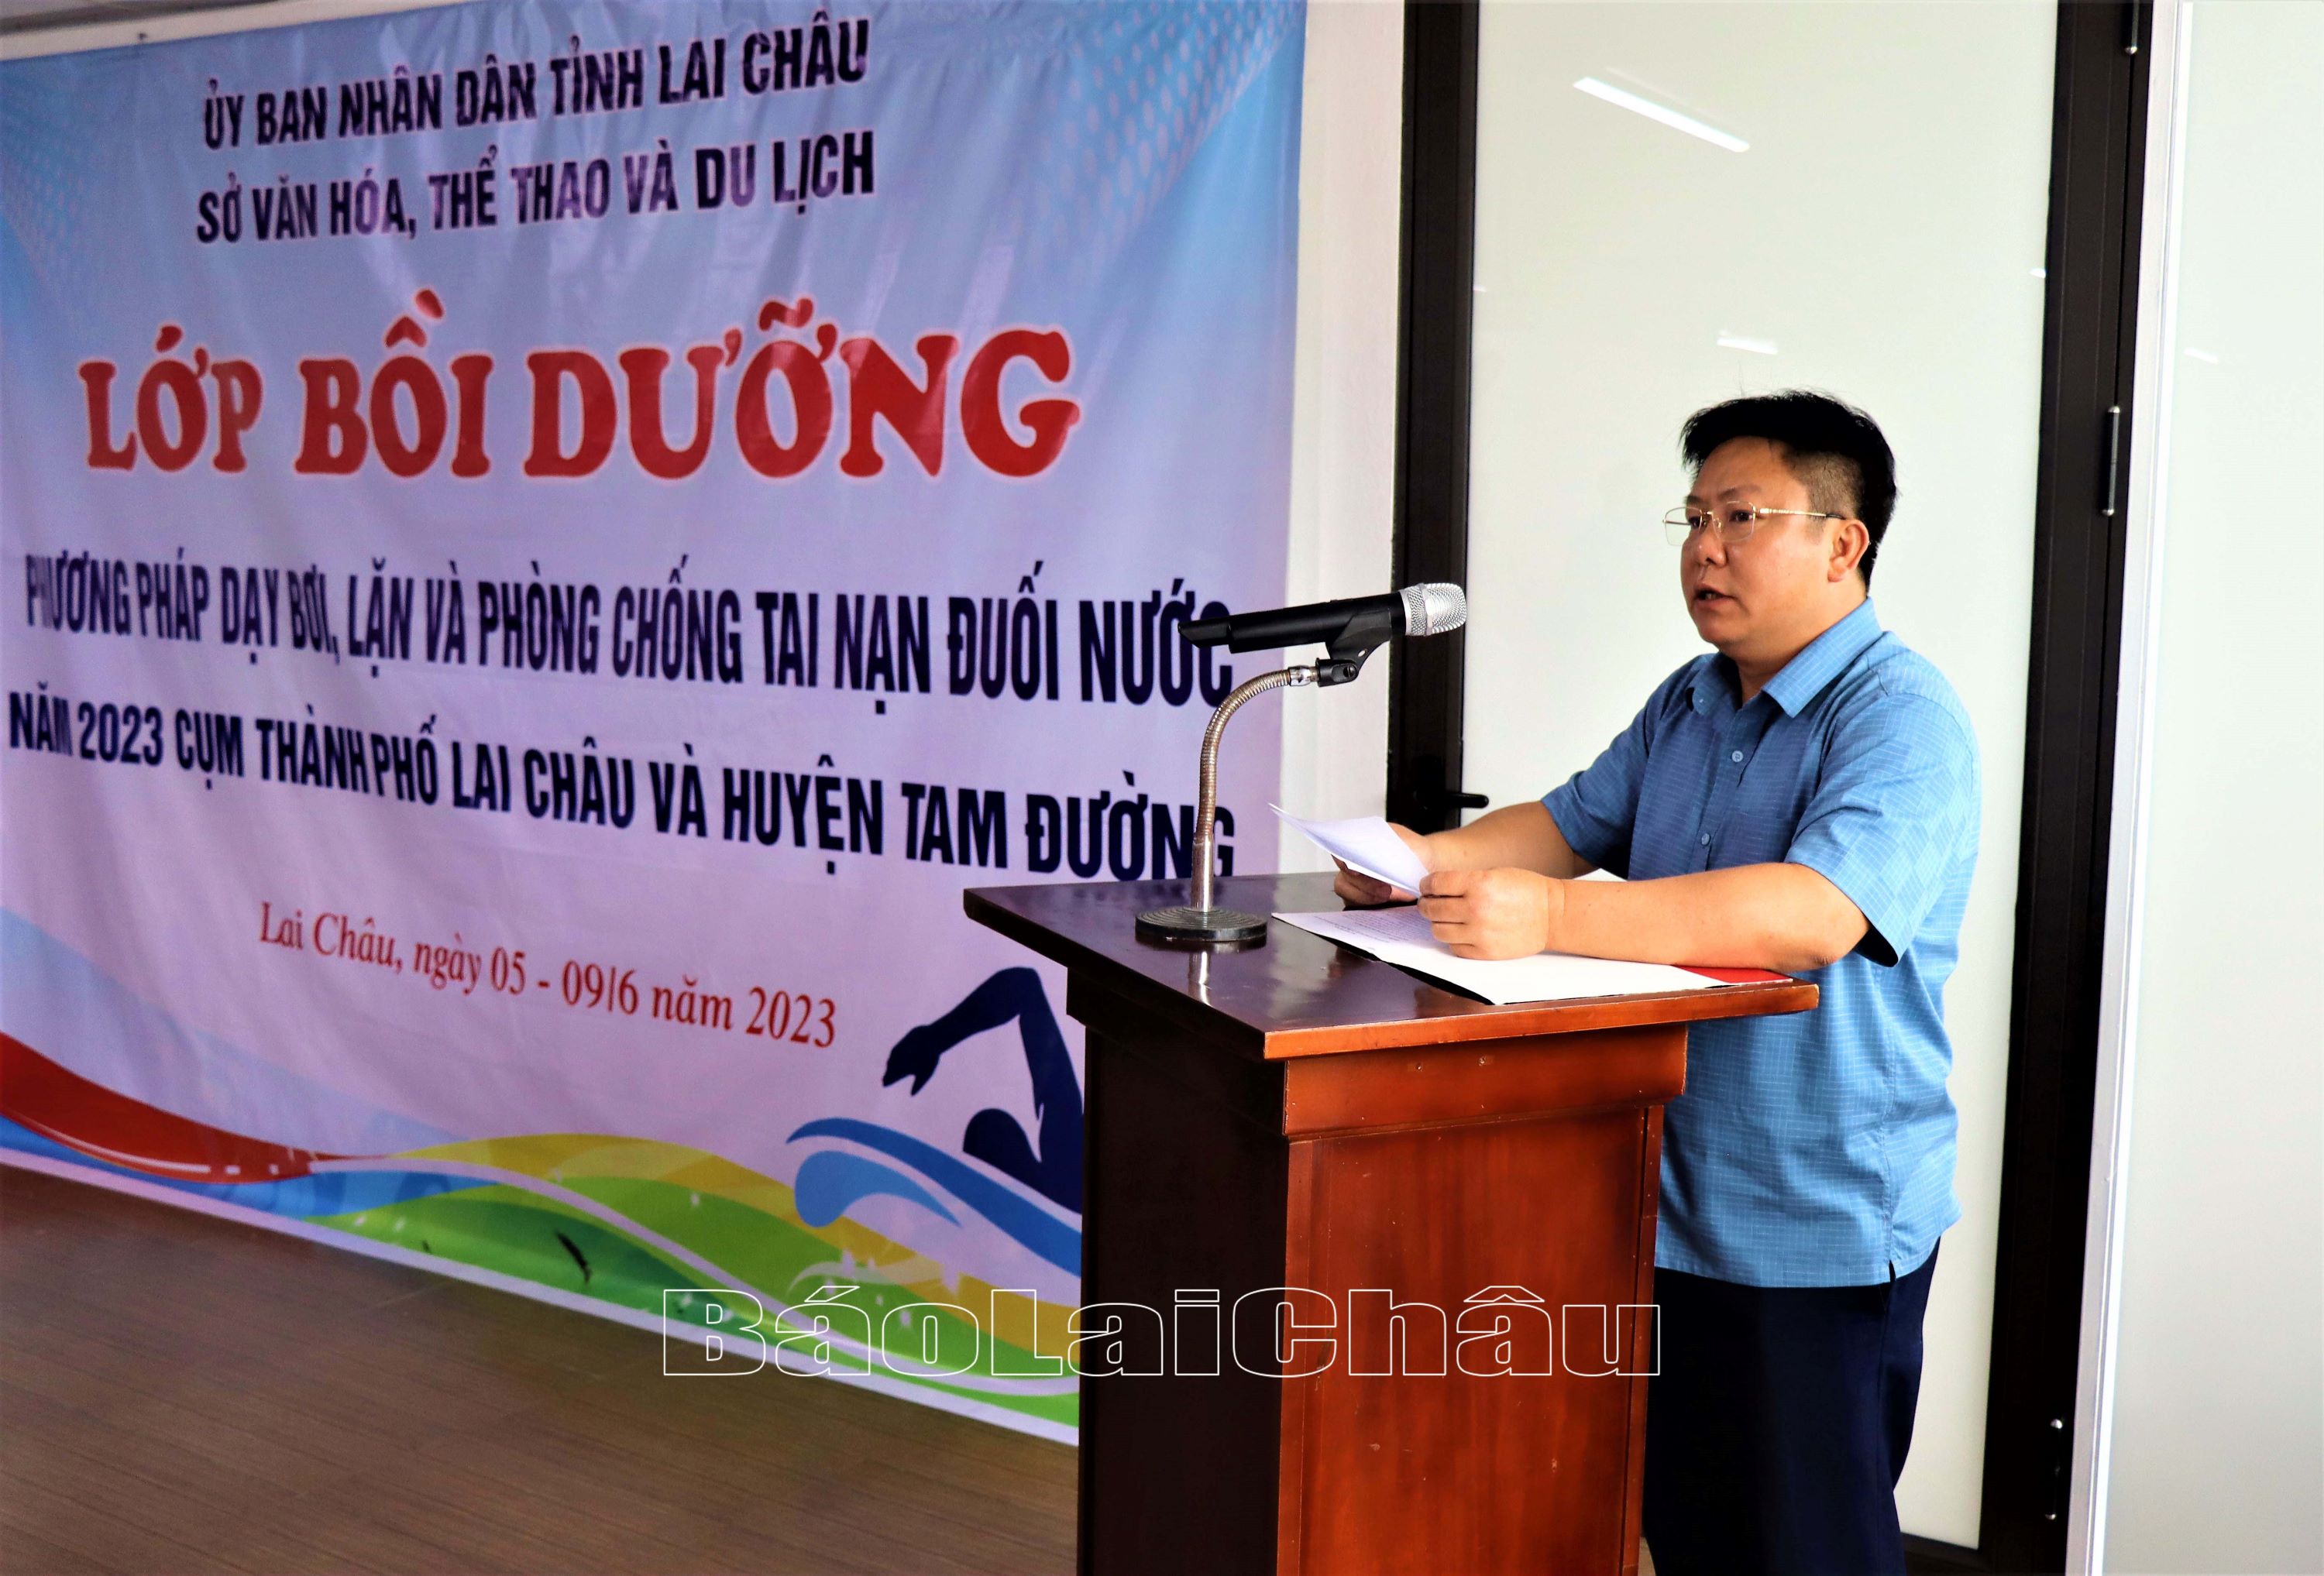 Đồng chí Trần Mạnh Hùng, Phó Giám đốc Sở Văn hóa, Thể thao và Du lịch phát biểu khai mạc.